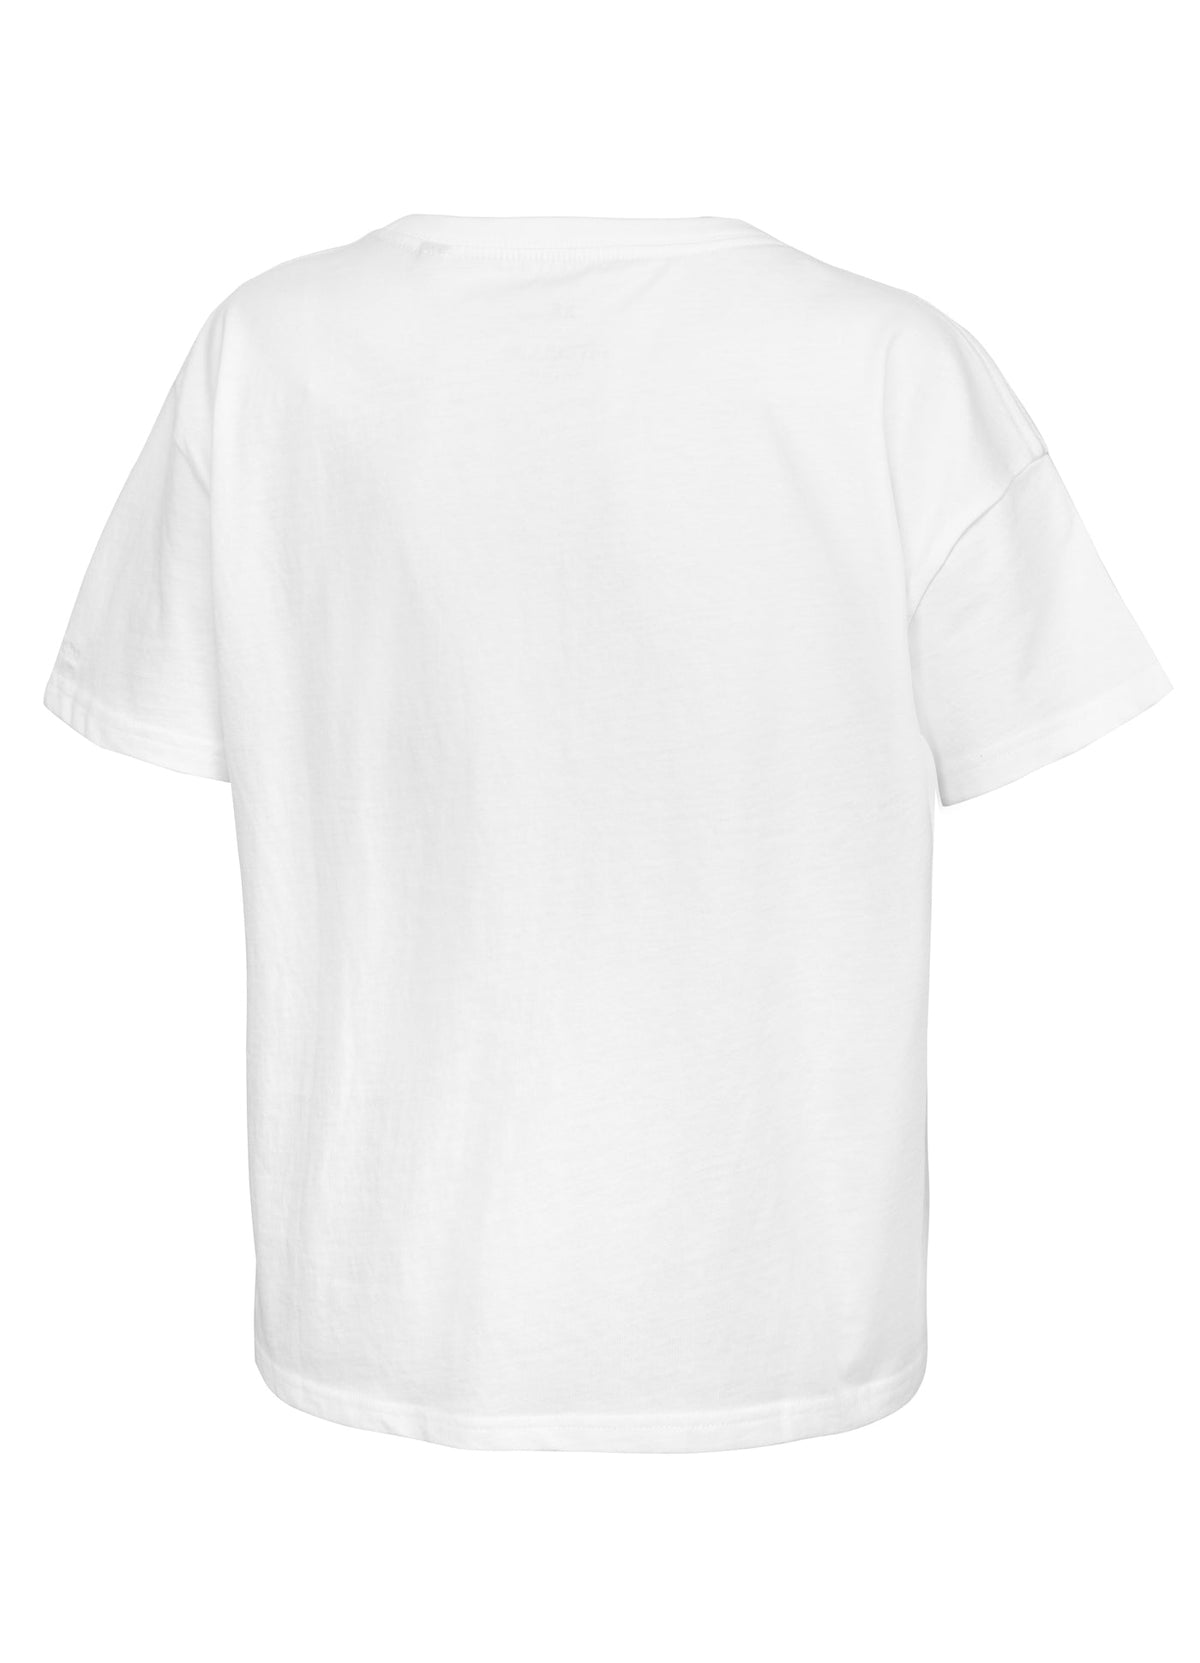 PRETTY OVERSIZE White T-shirt